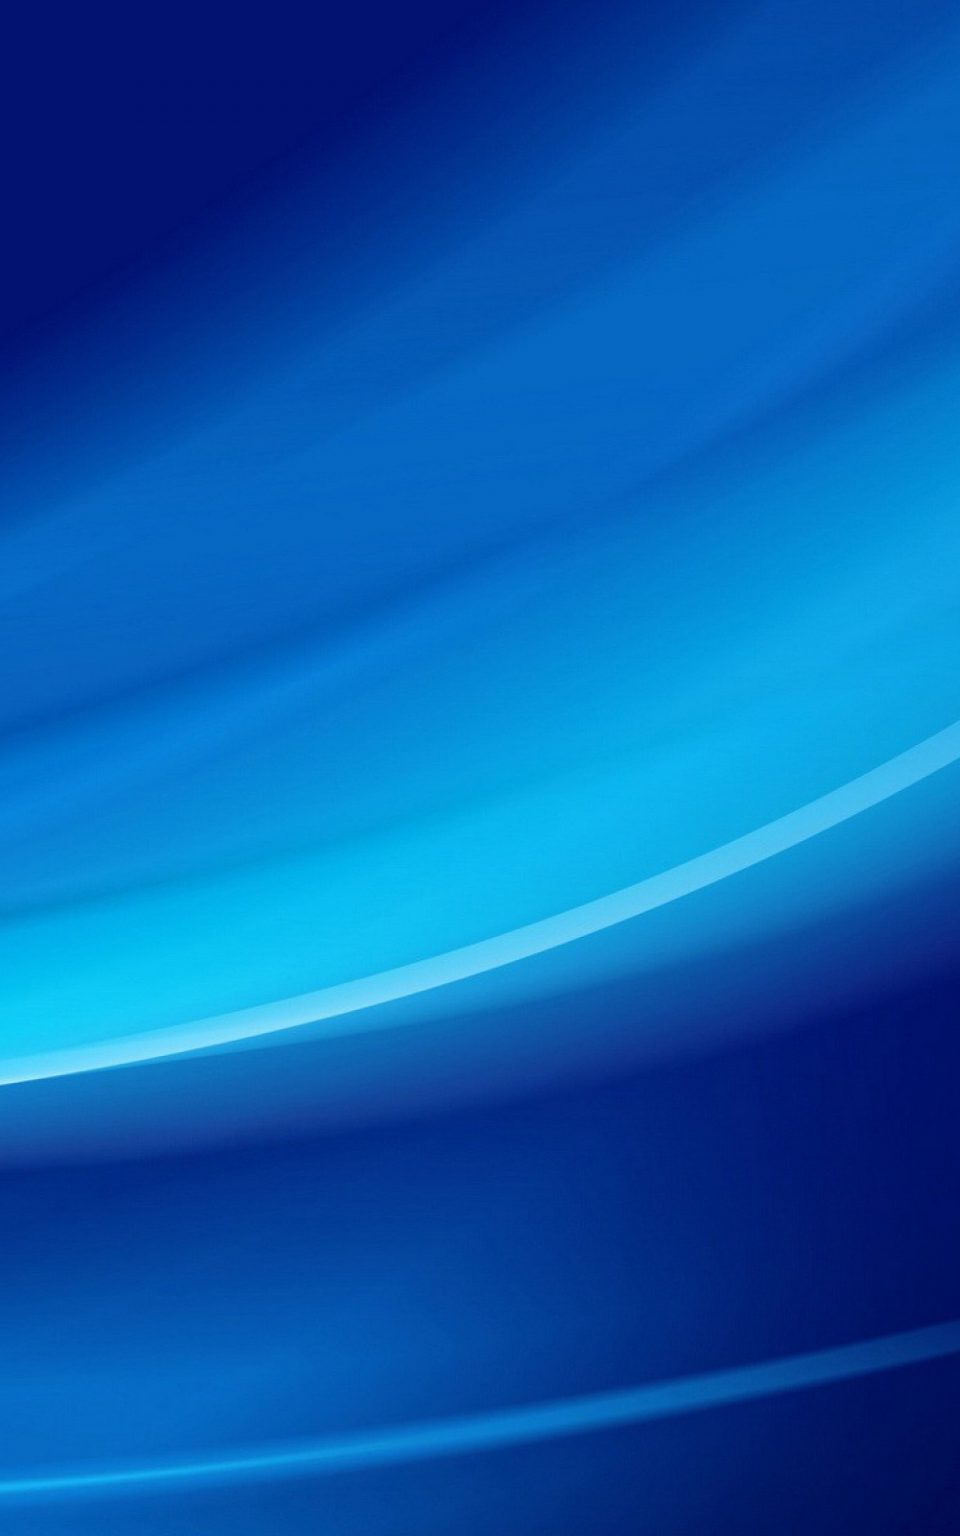 abstrak biru muda Android Wallpaper